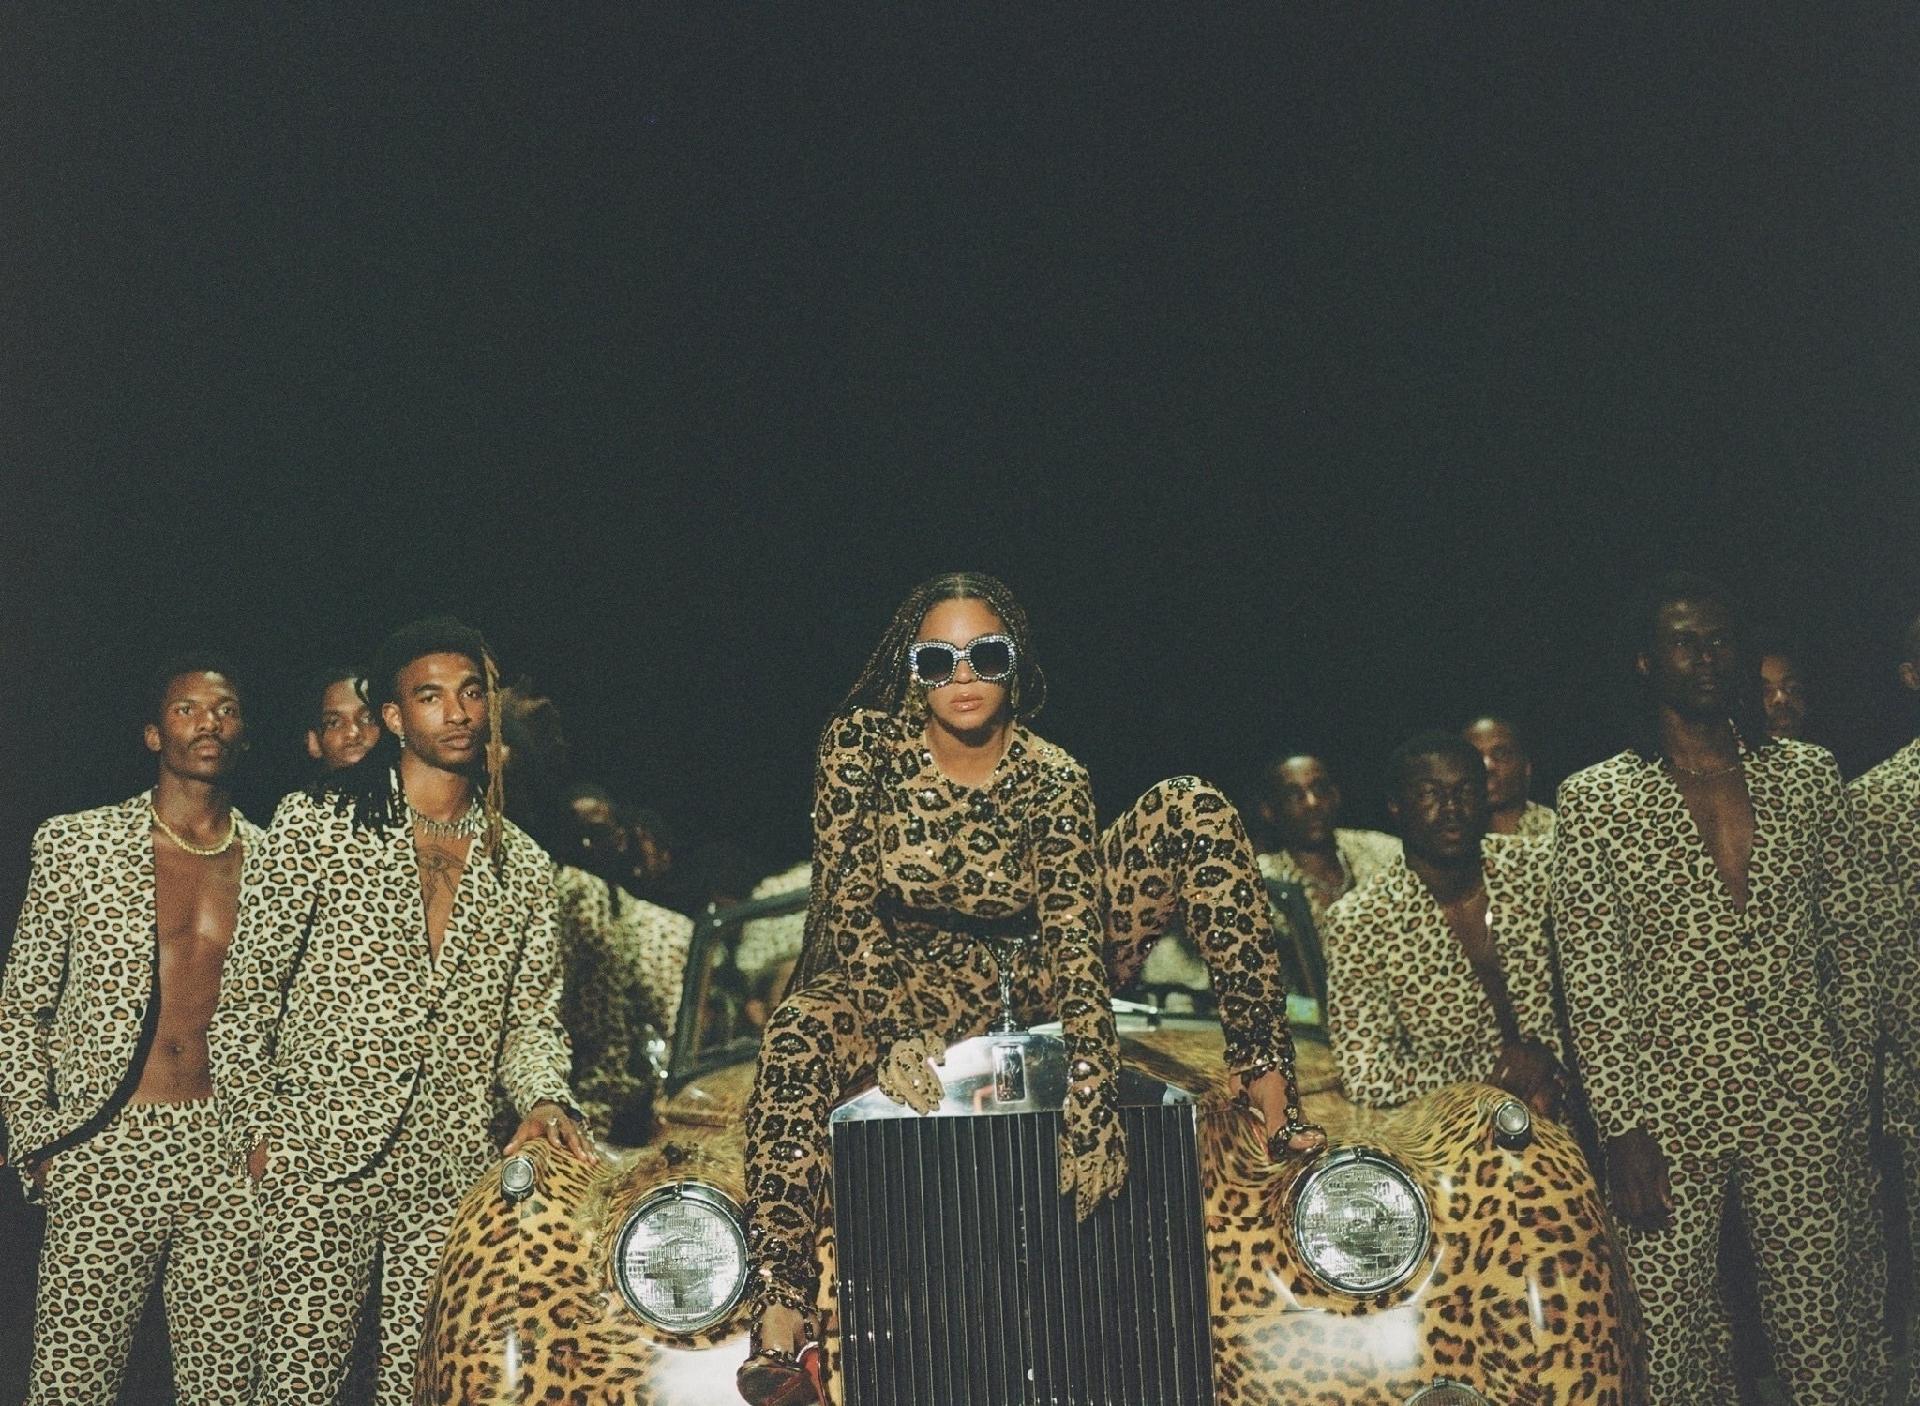 A imagem é uma foto do filme Black Is King. Nela, a cantora Beyoncé está sentada em cima de um carro com estampa de oncinha. Beyoncé é uma mulher negra, com cabelos longos em tranças, ela veste uma calça, blusa de manga comprida e um salto de estampa de oncinha e usa um óculos escuro no rosto. Ao redor do carro, estão vários homens negros com terno e calça de estampa de oncinha.